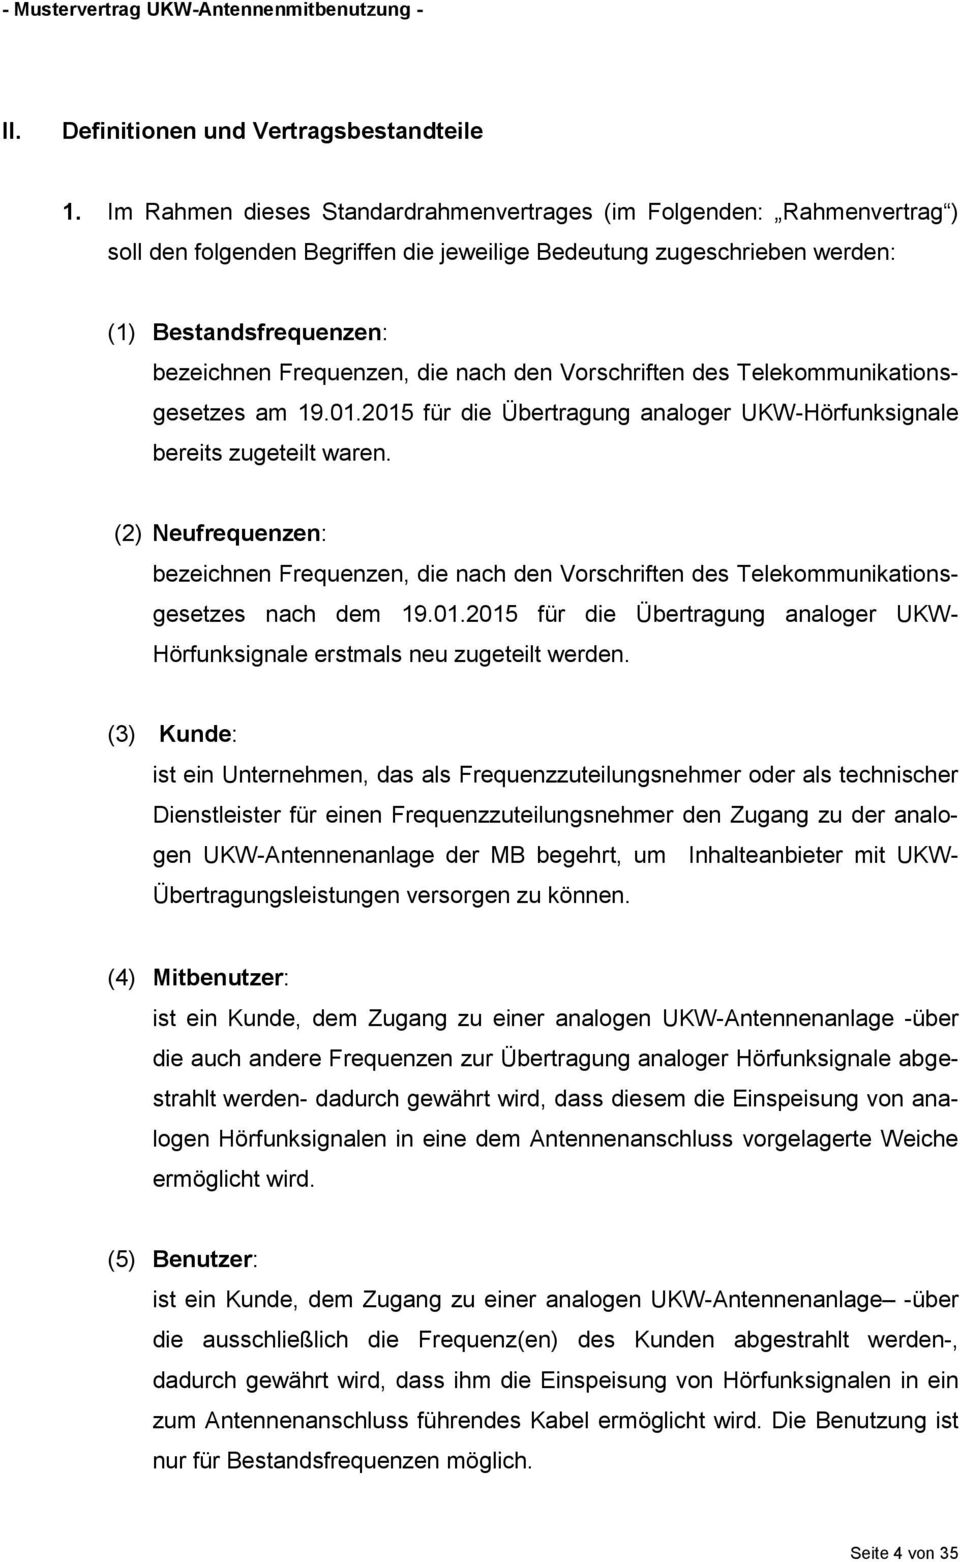 nach den Vorschriften des Telekommunikationsgesetzes am 19.01.2015 für die Übertragung analoger UKW-Hörfunksignale bereits zugeteilt waren.